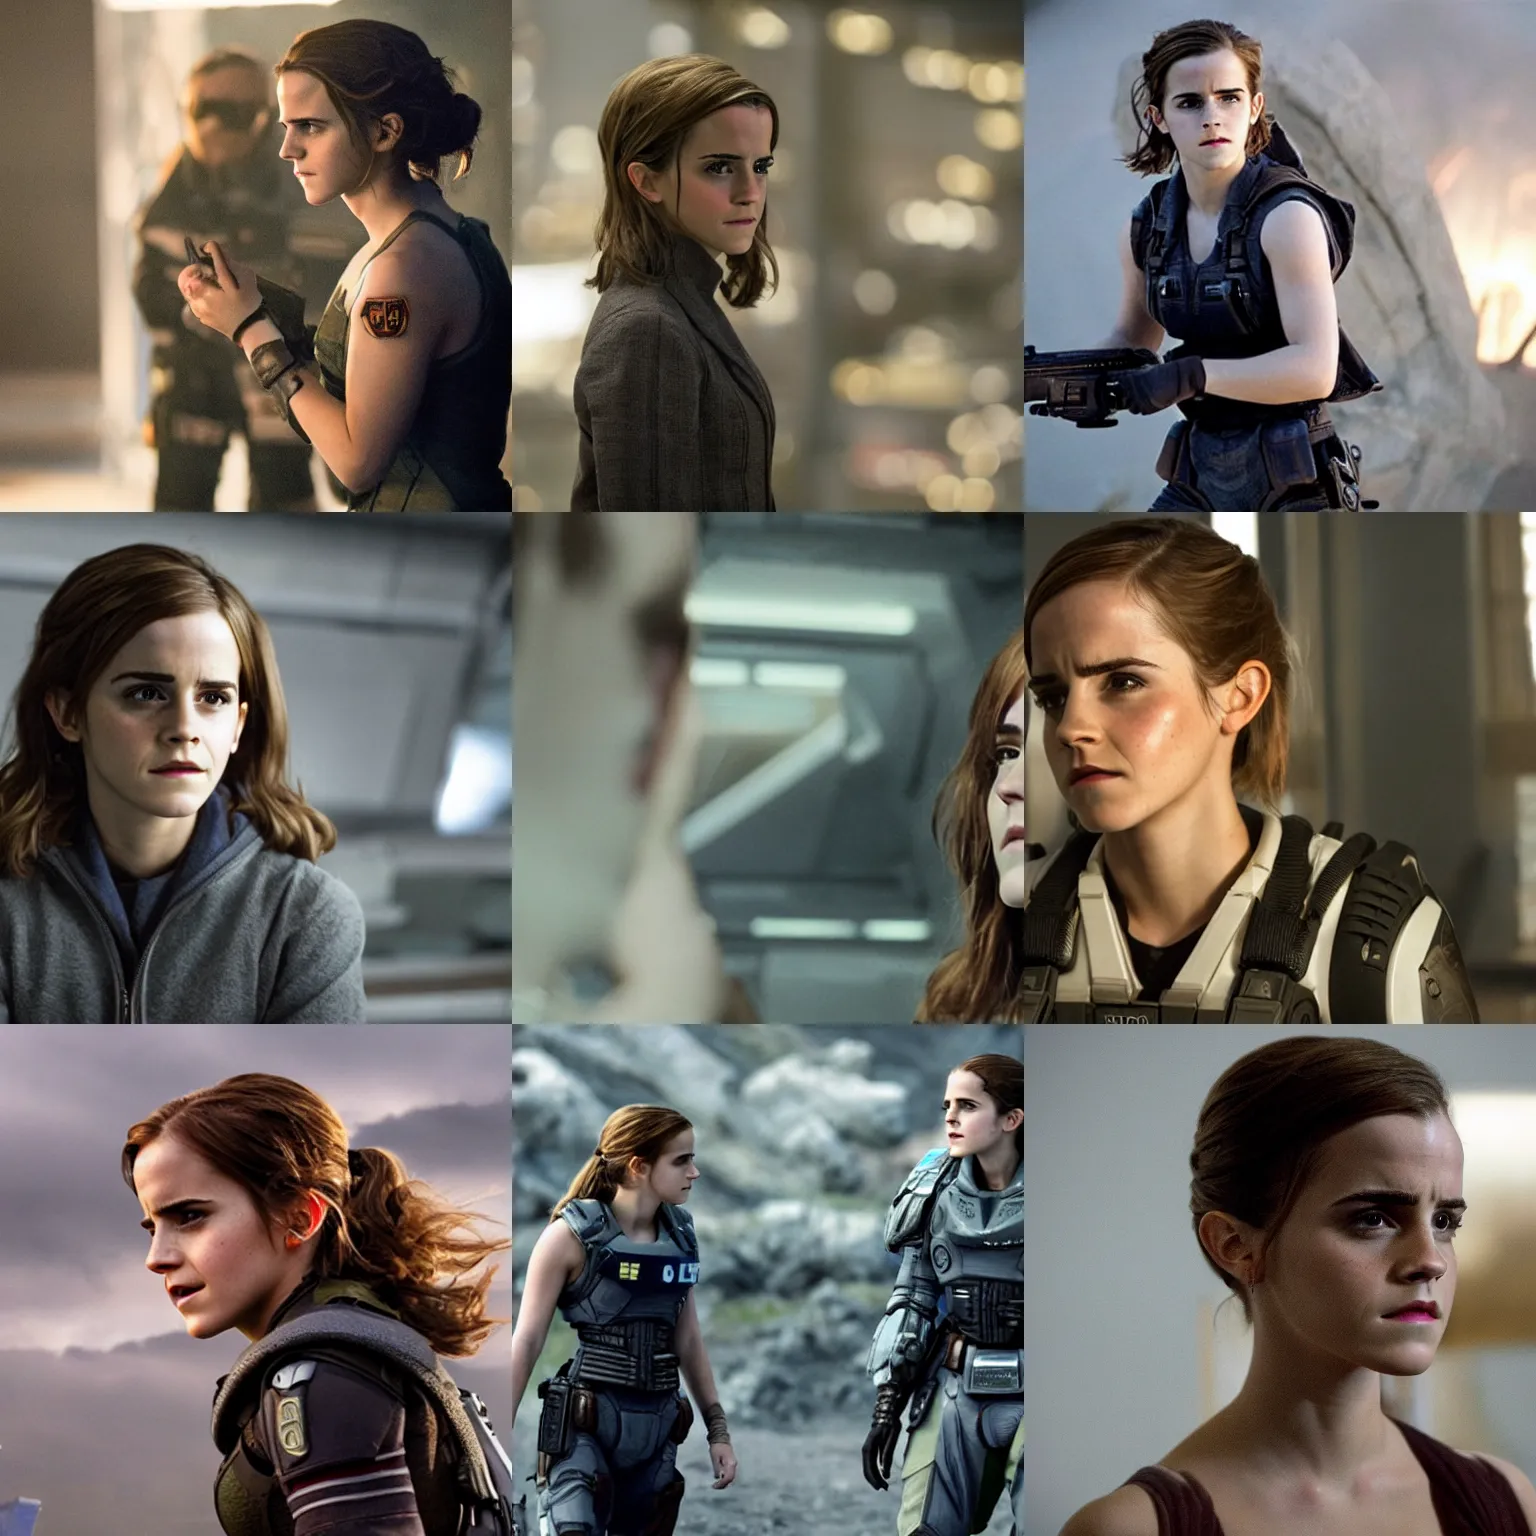 Prompt: Movie still of Emma Watson in StarCraft